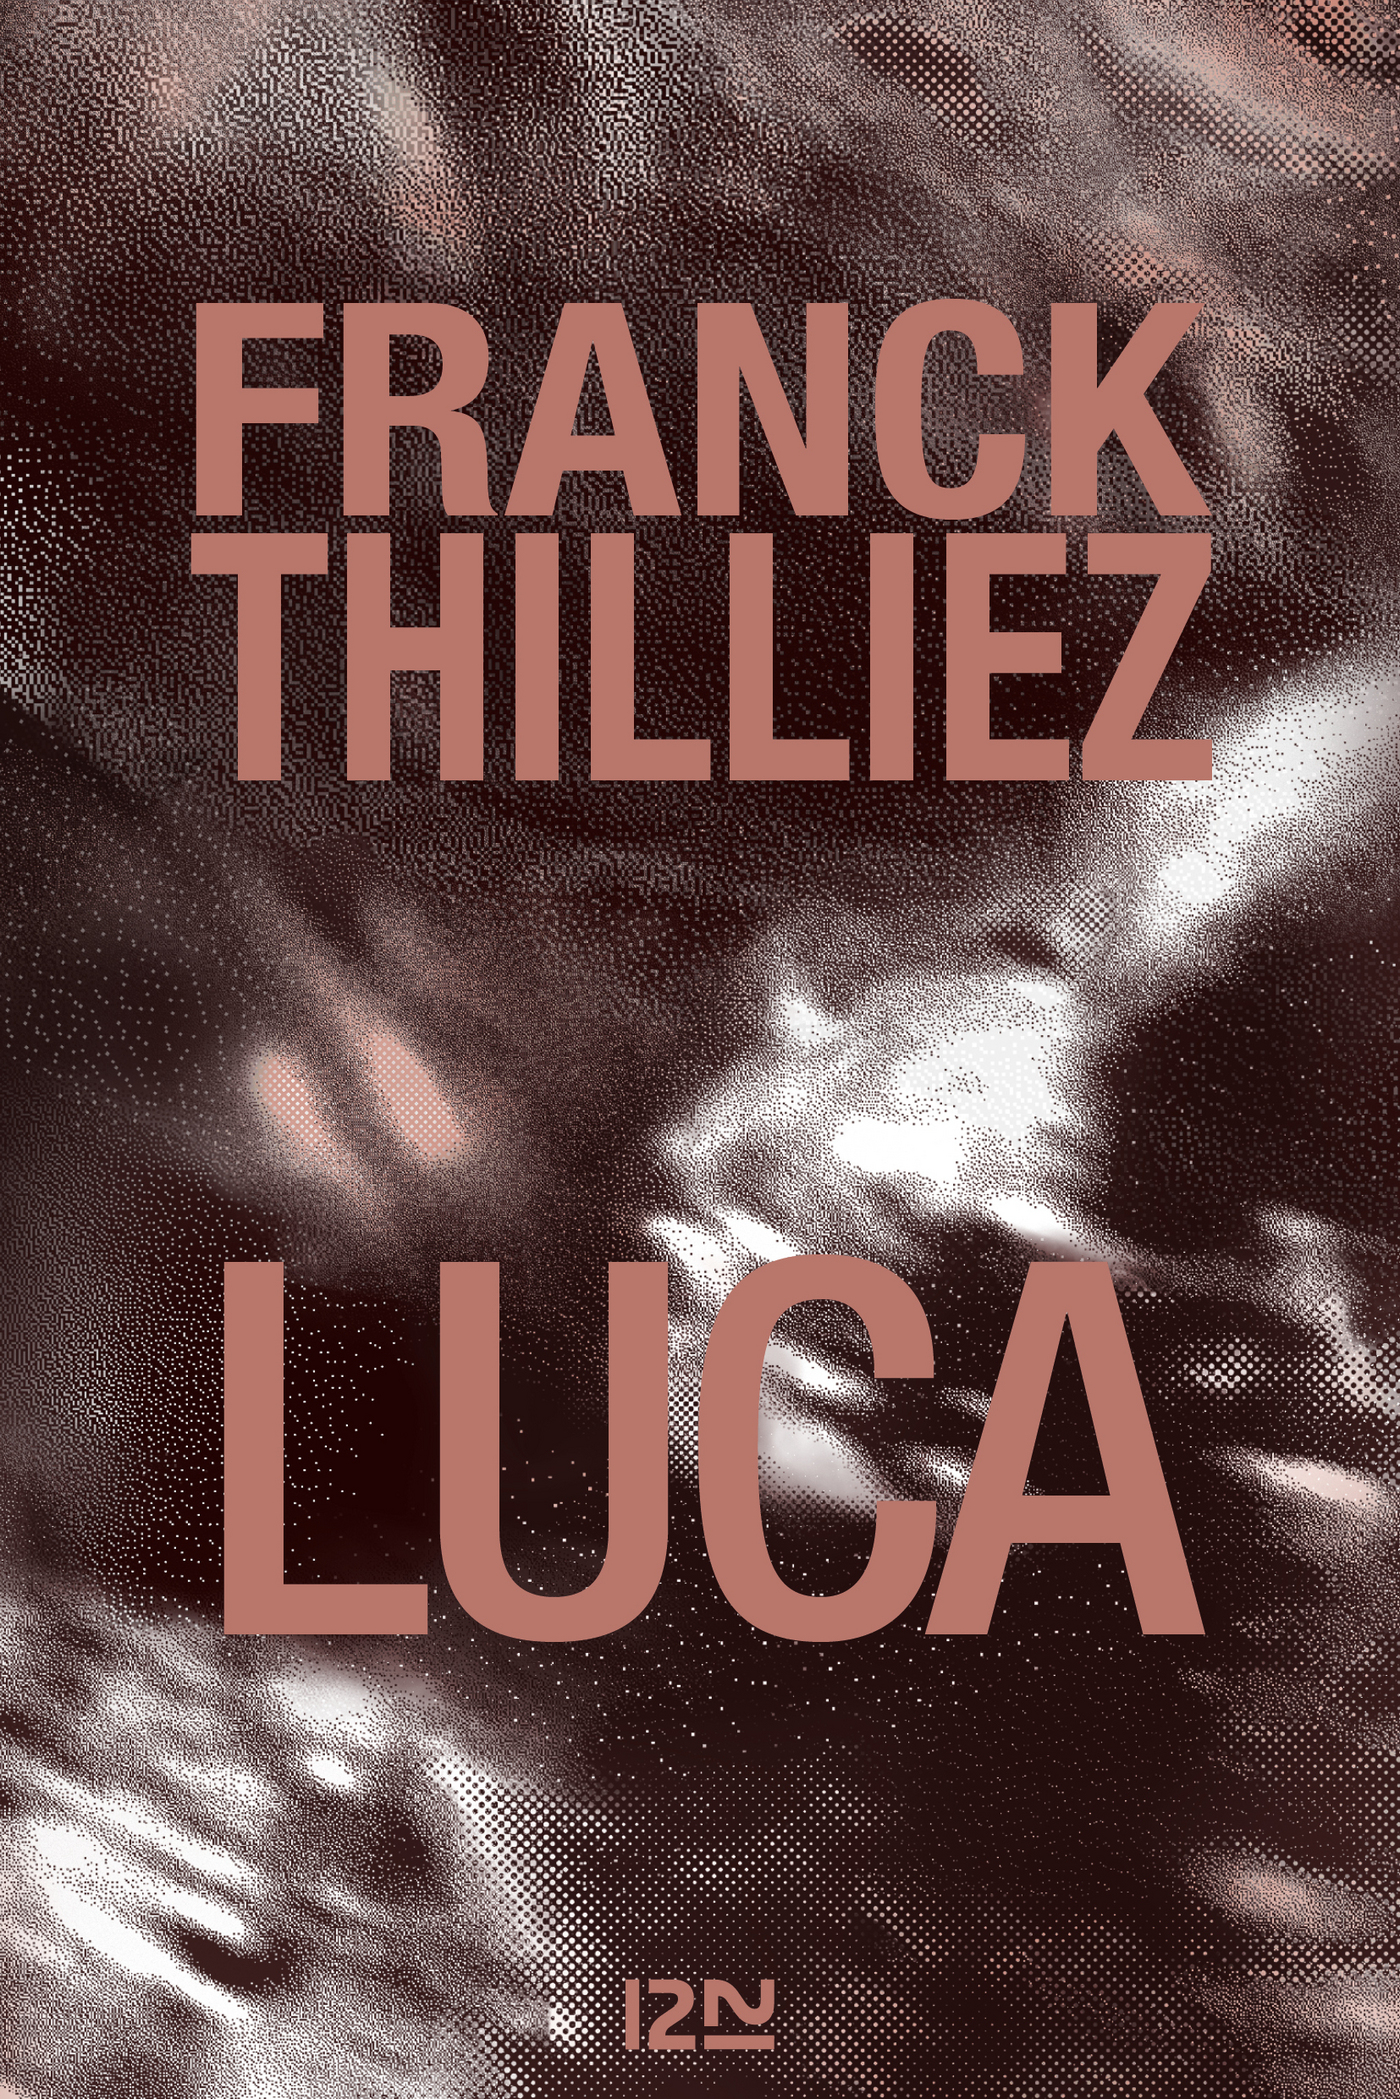 Afficher "Luca"